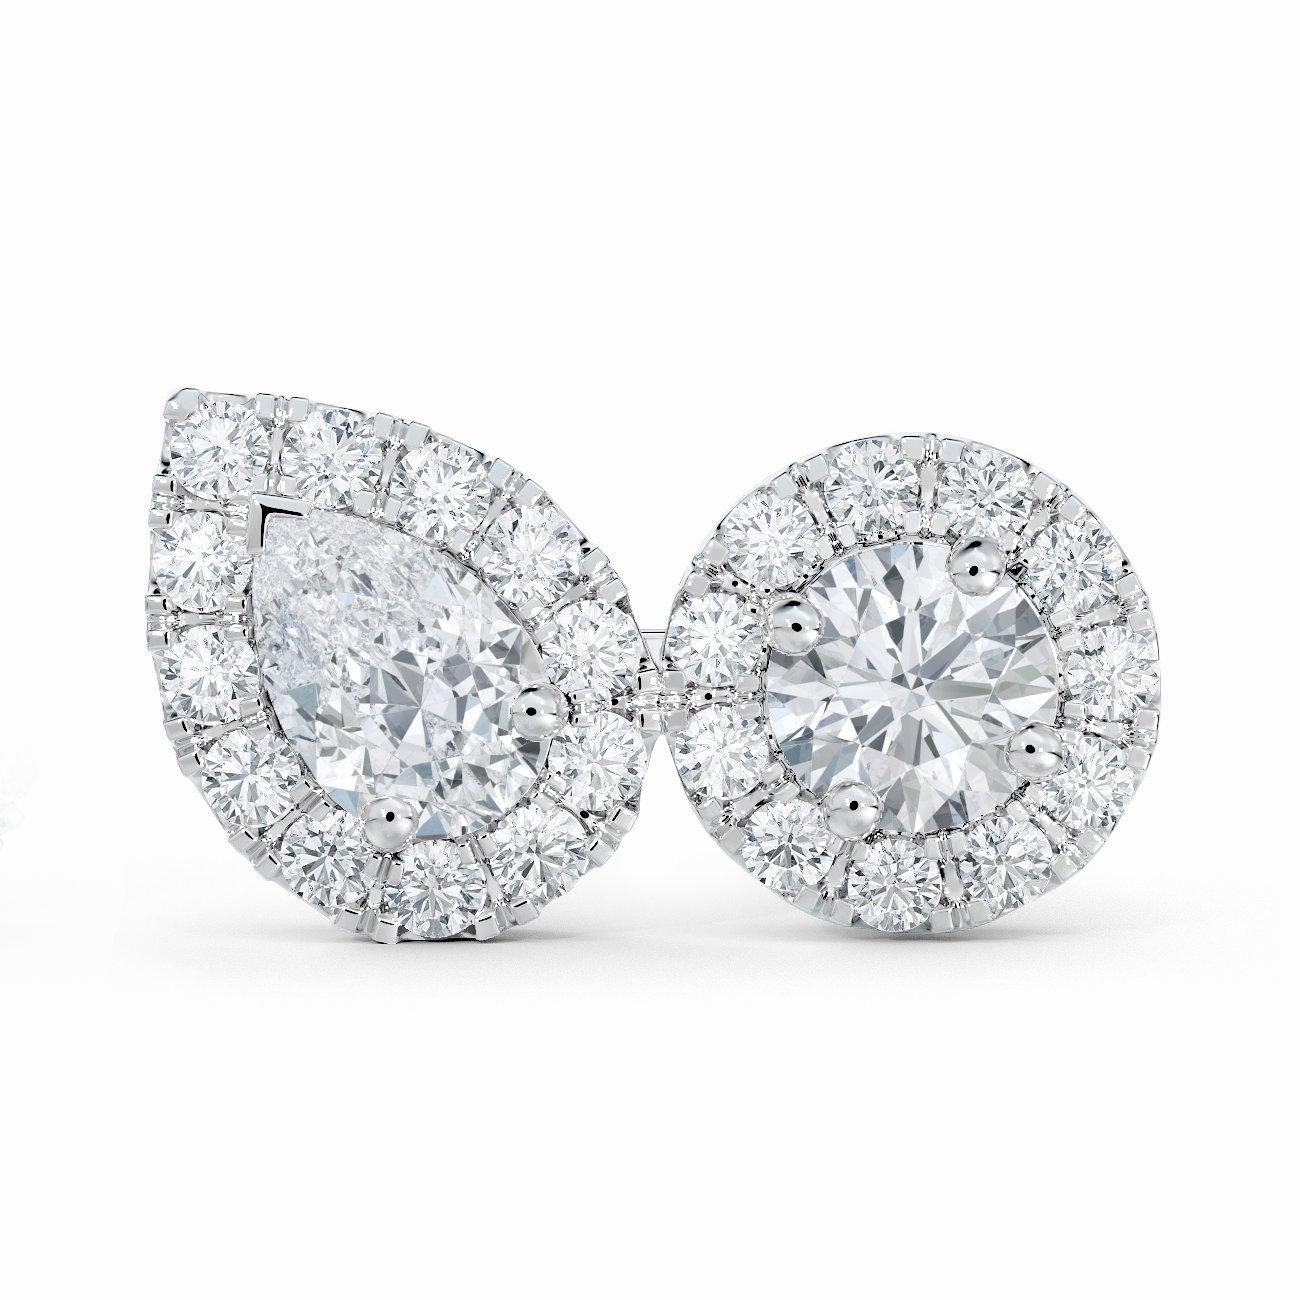 Dede Diamond Dot Stud Earrings – RW Fine Jewelry